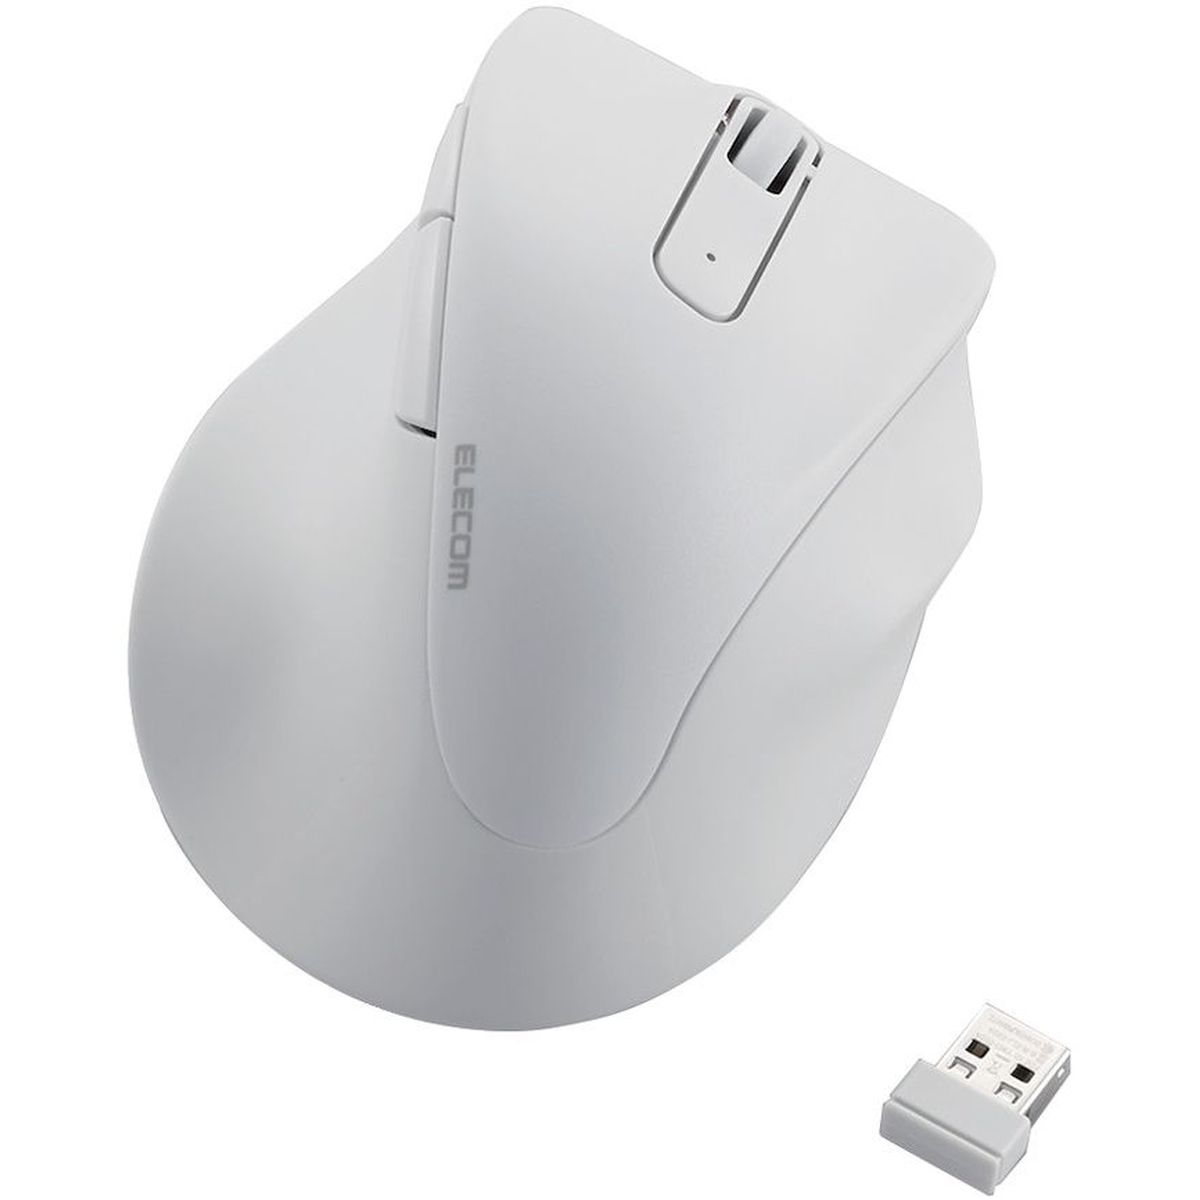 マウス/EX-G/右手用/XLサイズ/無線/5ボタン/ホワイト